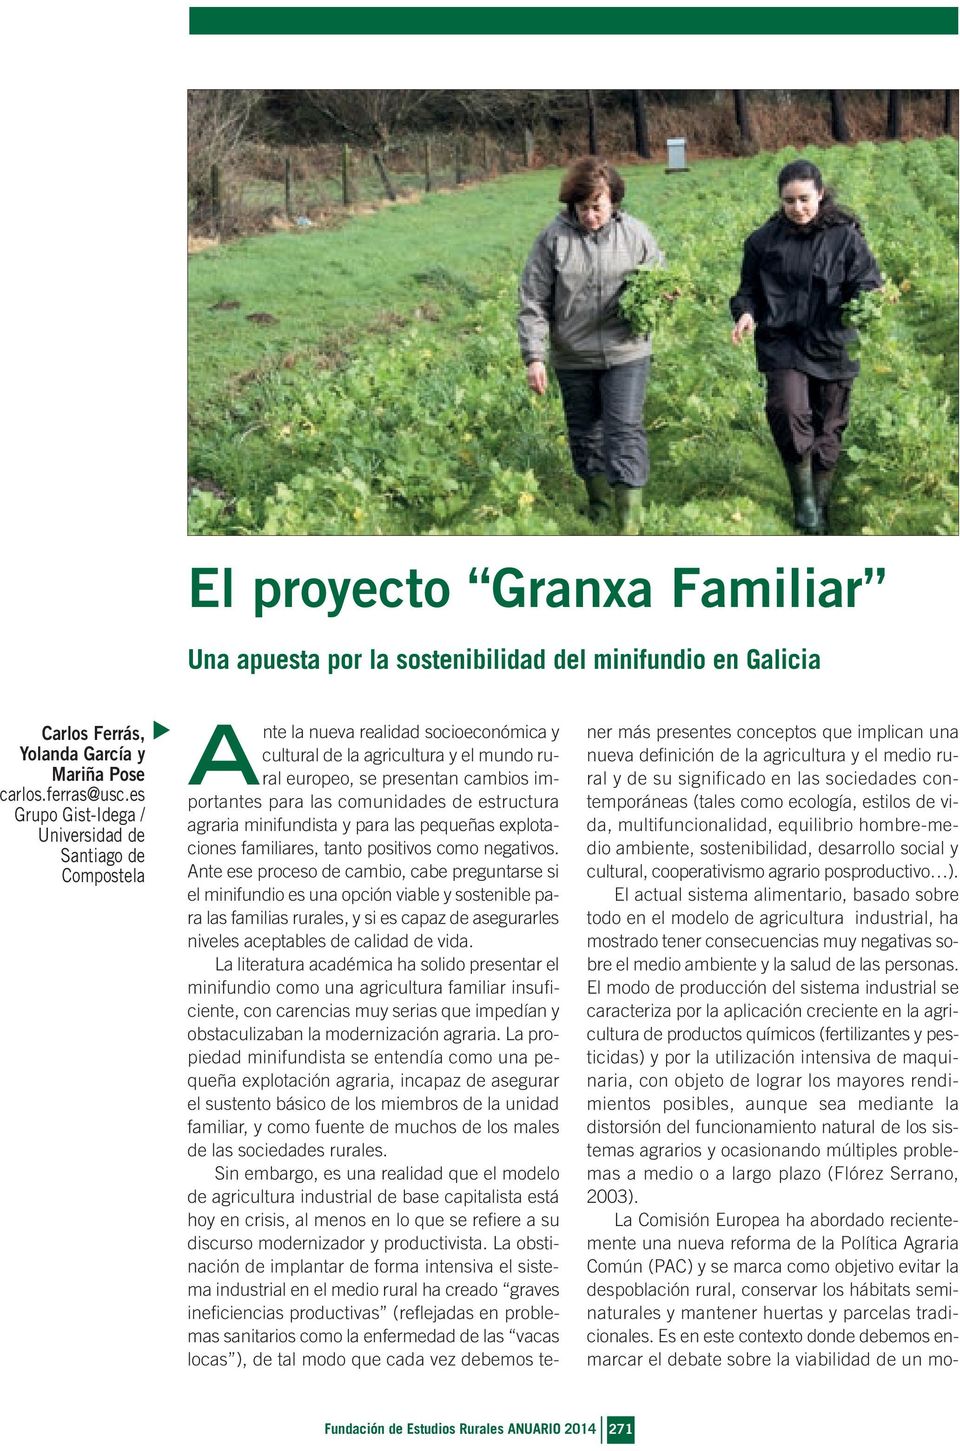 comunidades de estructura agraria minifundista y para las pequeñas explotaciones familiares, tanto positivos como negativos.